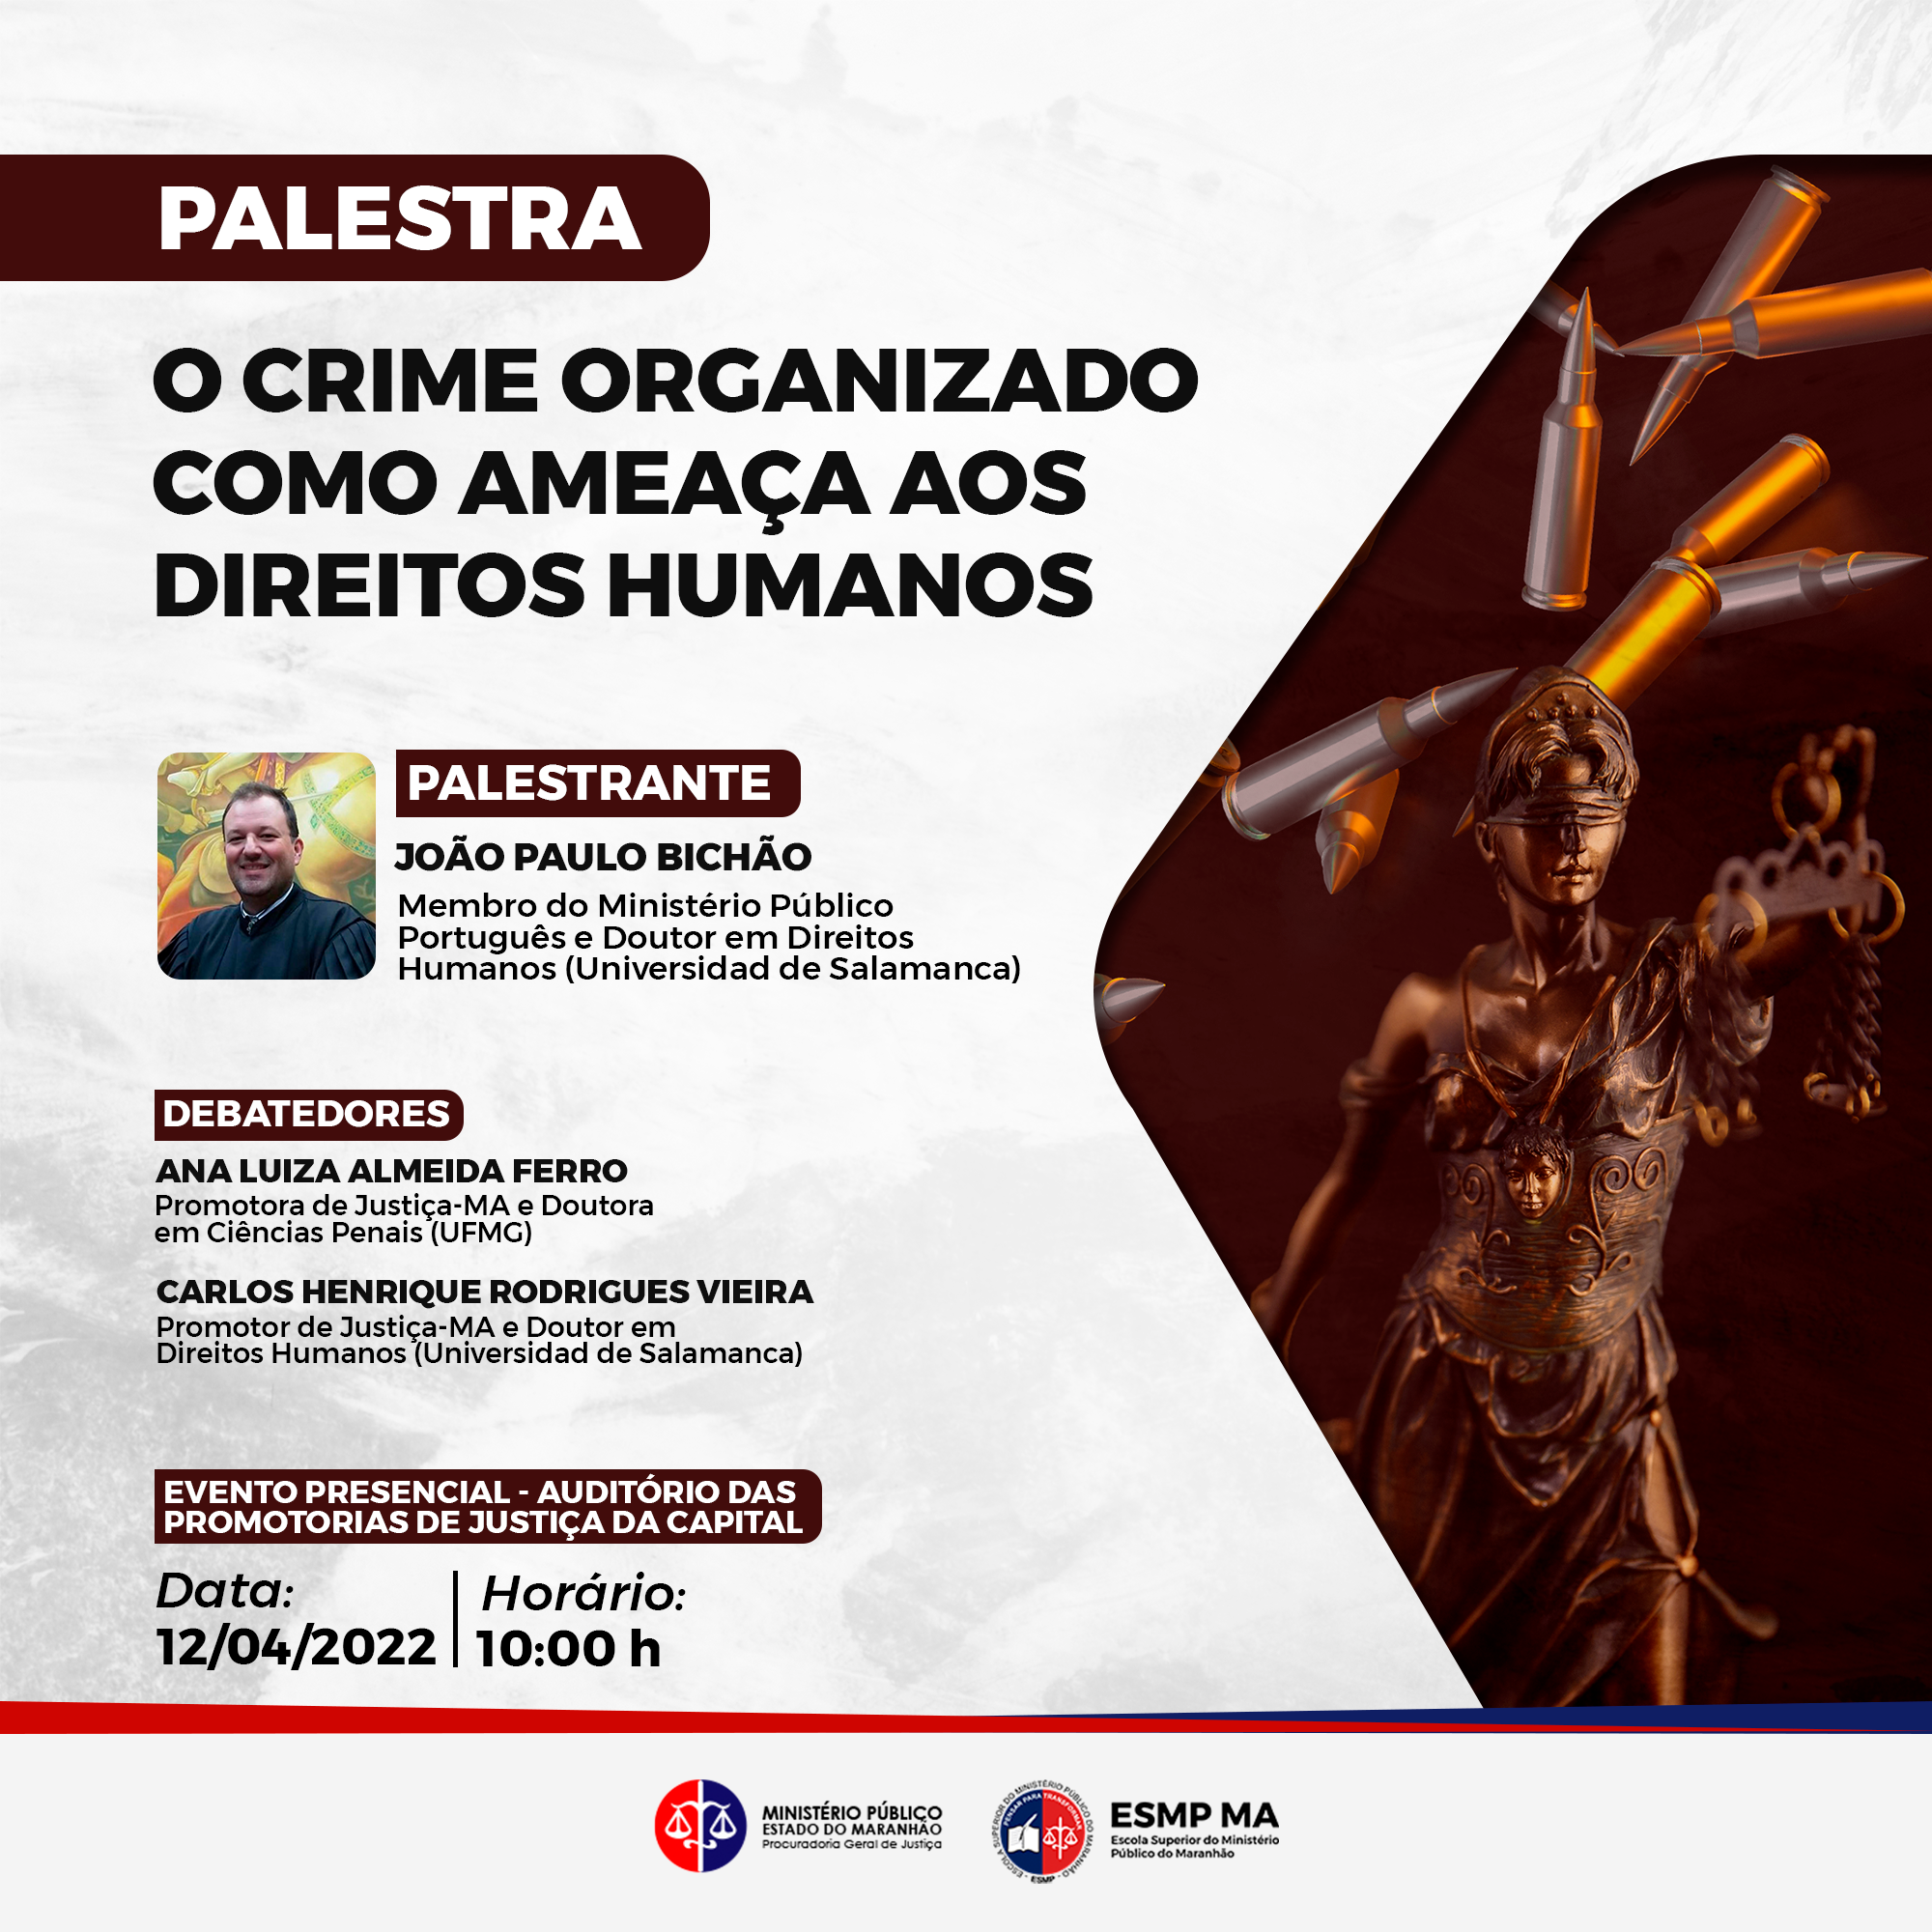 Palestra - Crime Organizado como Ameaça aos Direitos Humanos